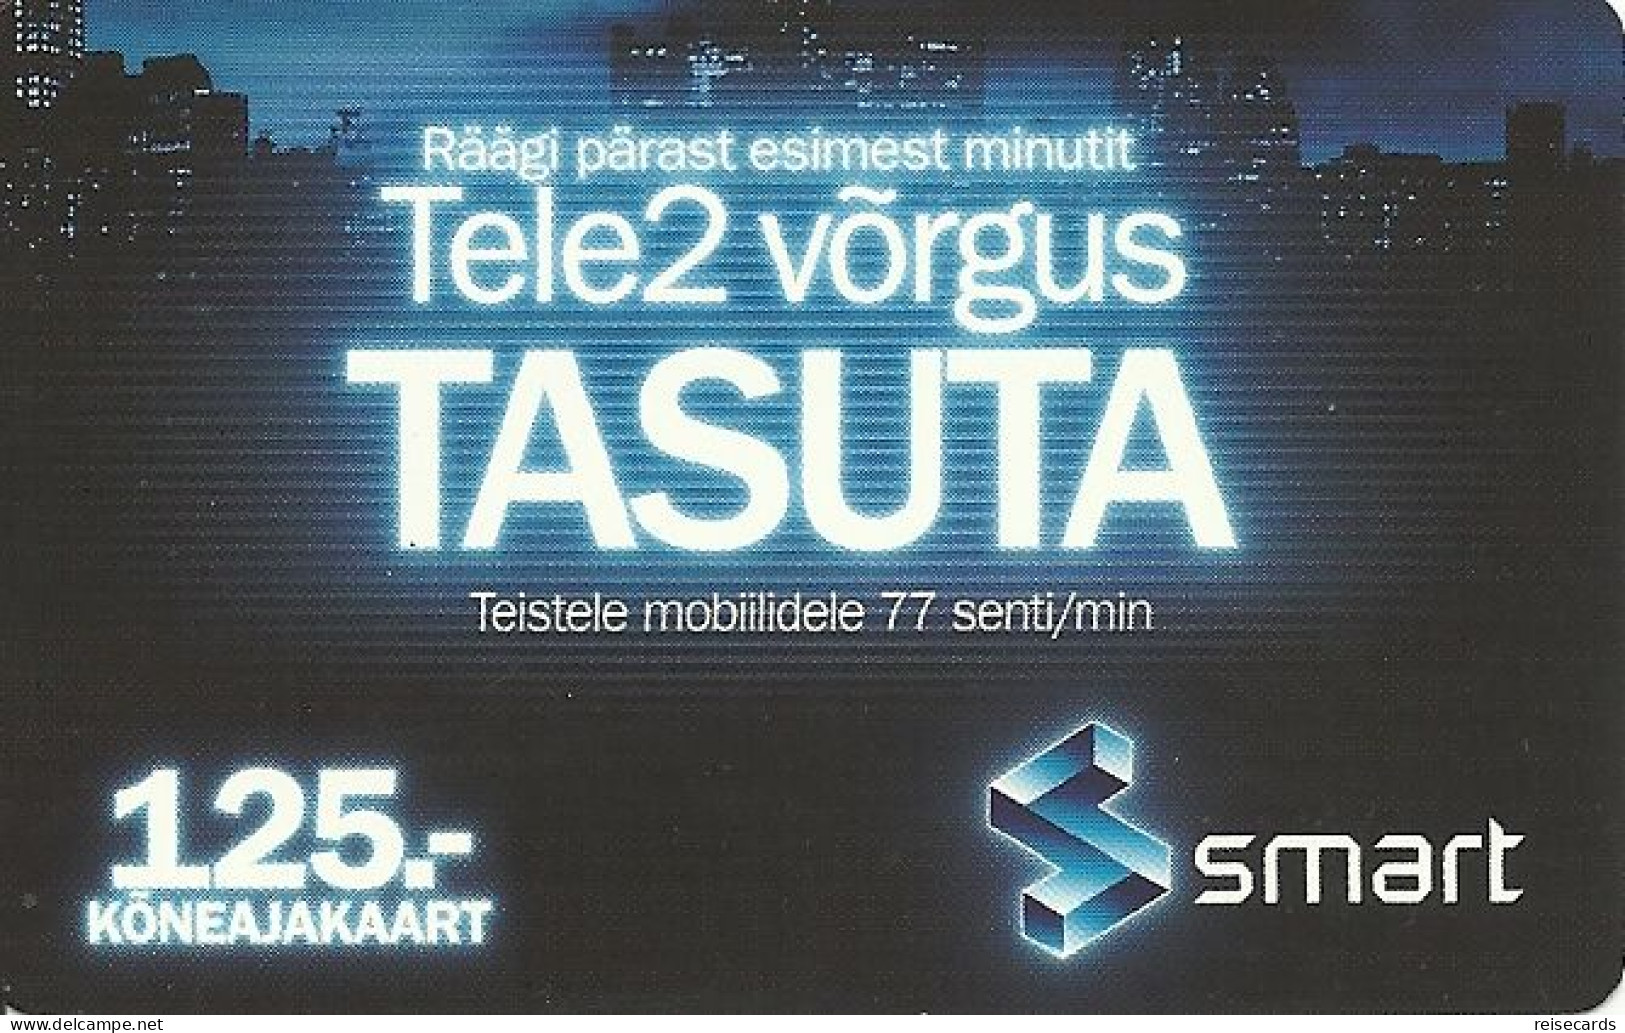 Estonia: Prepaid Tele2 Smart - Estonie